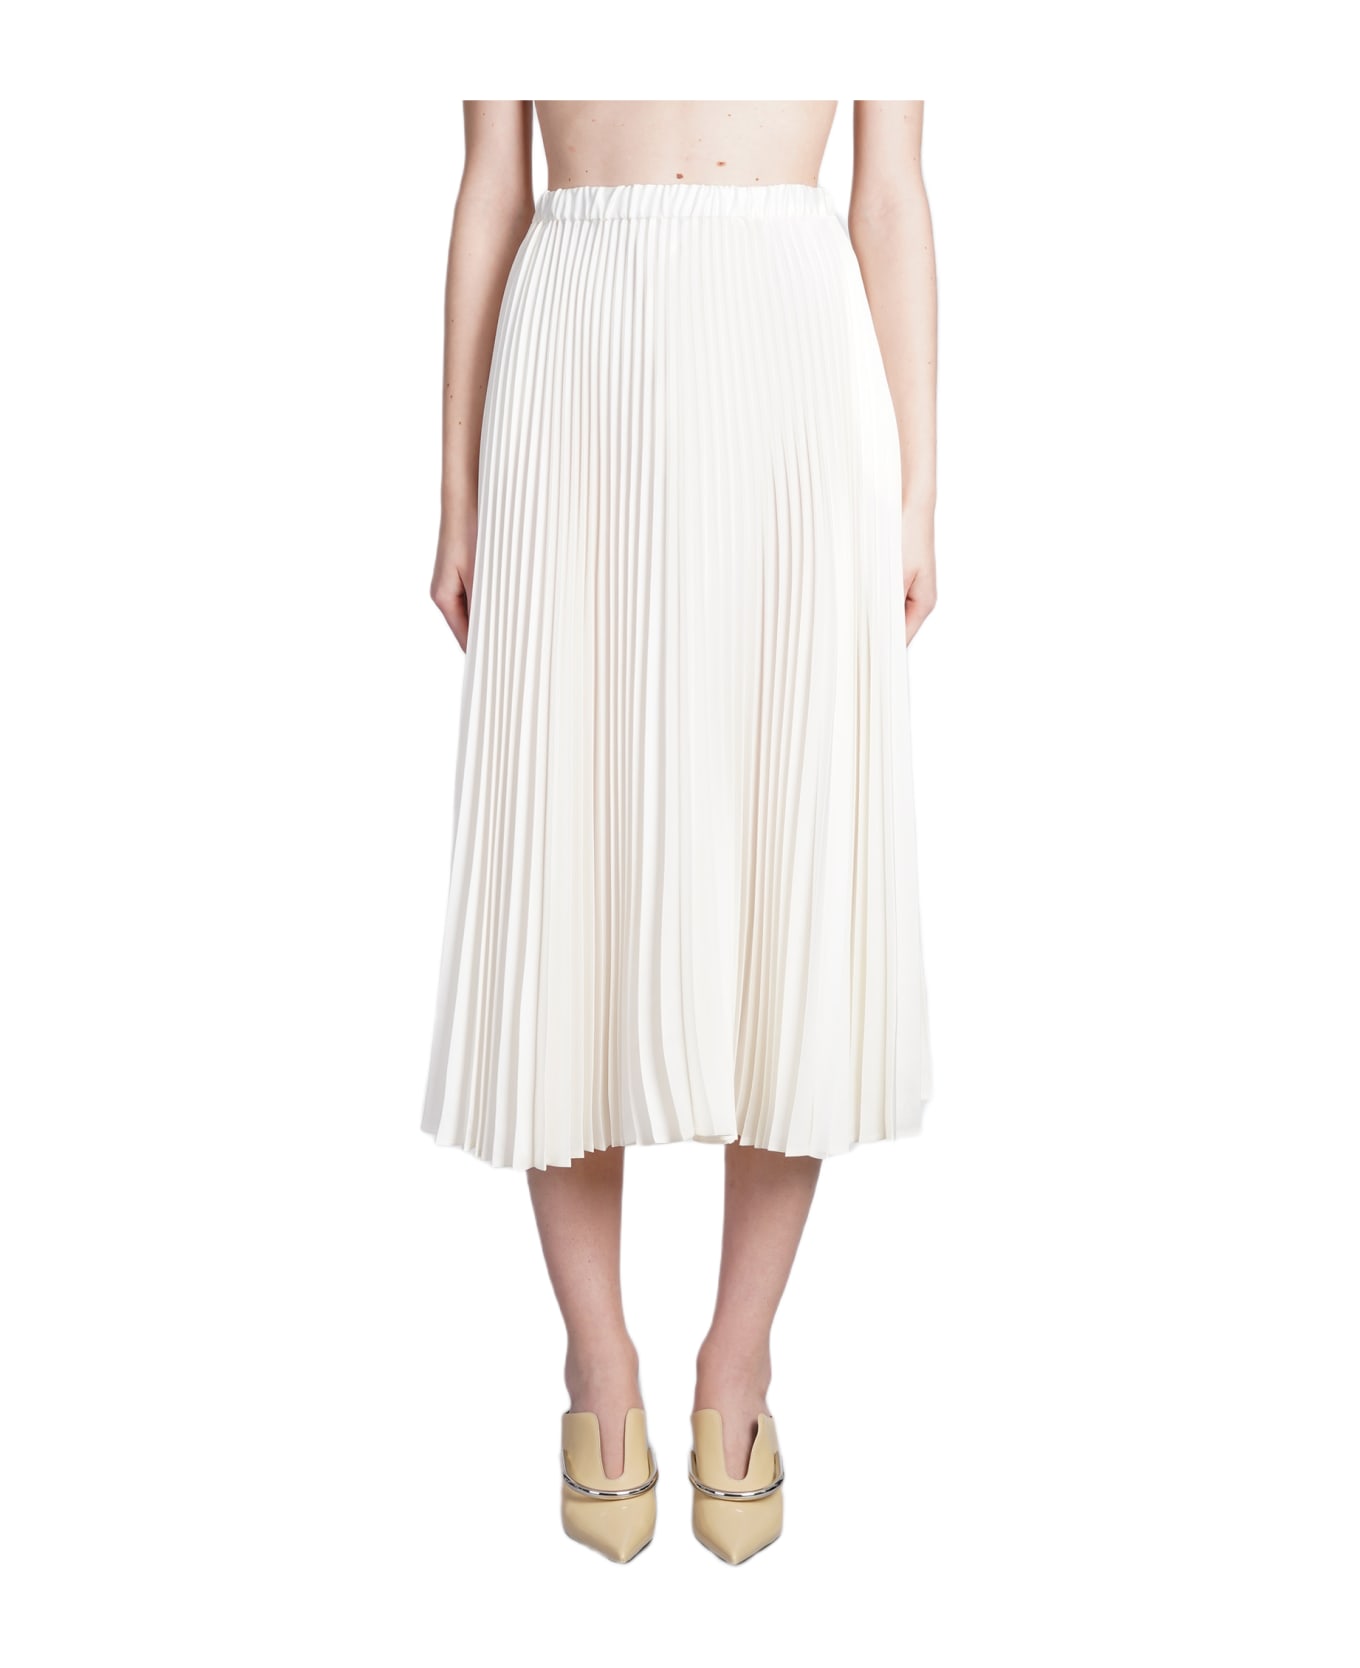 Jil Sander Skirt In White Polyester - white